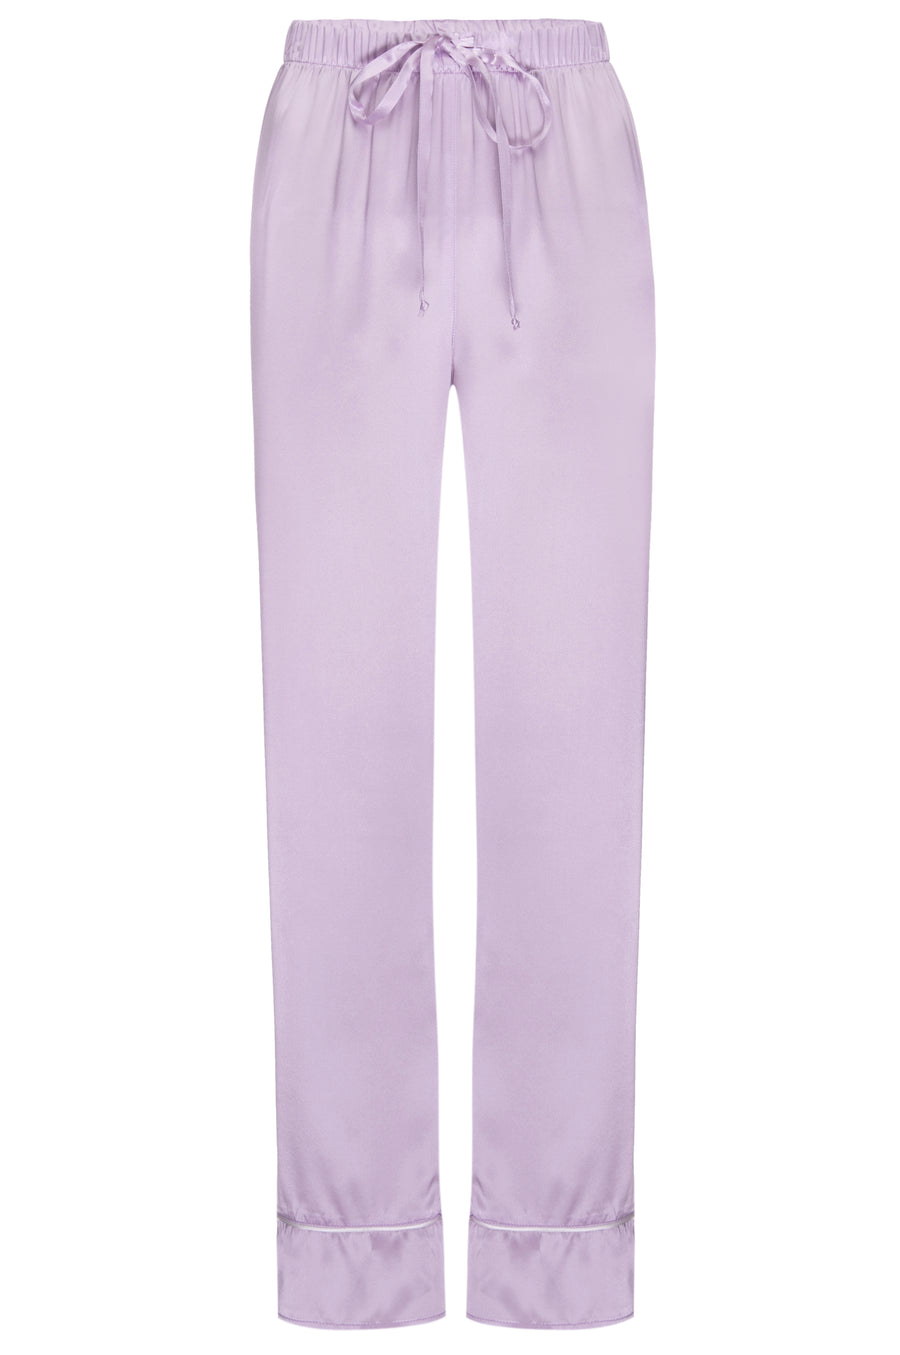 Silk Charmeuse Pants: Lilac